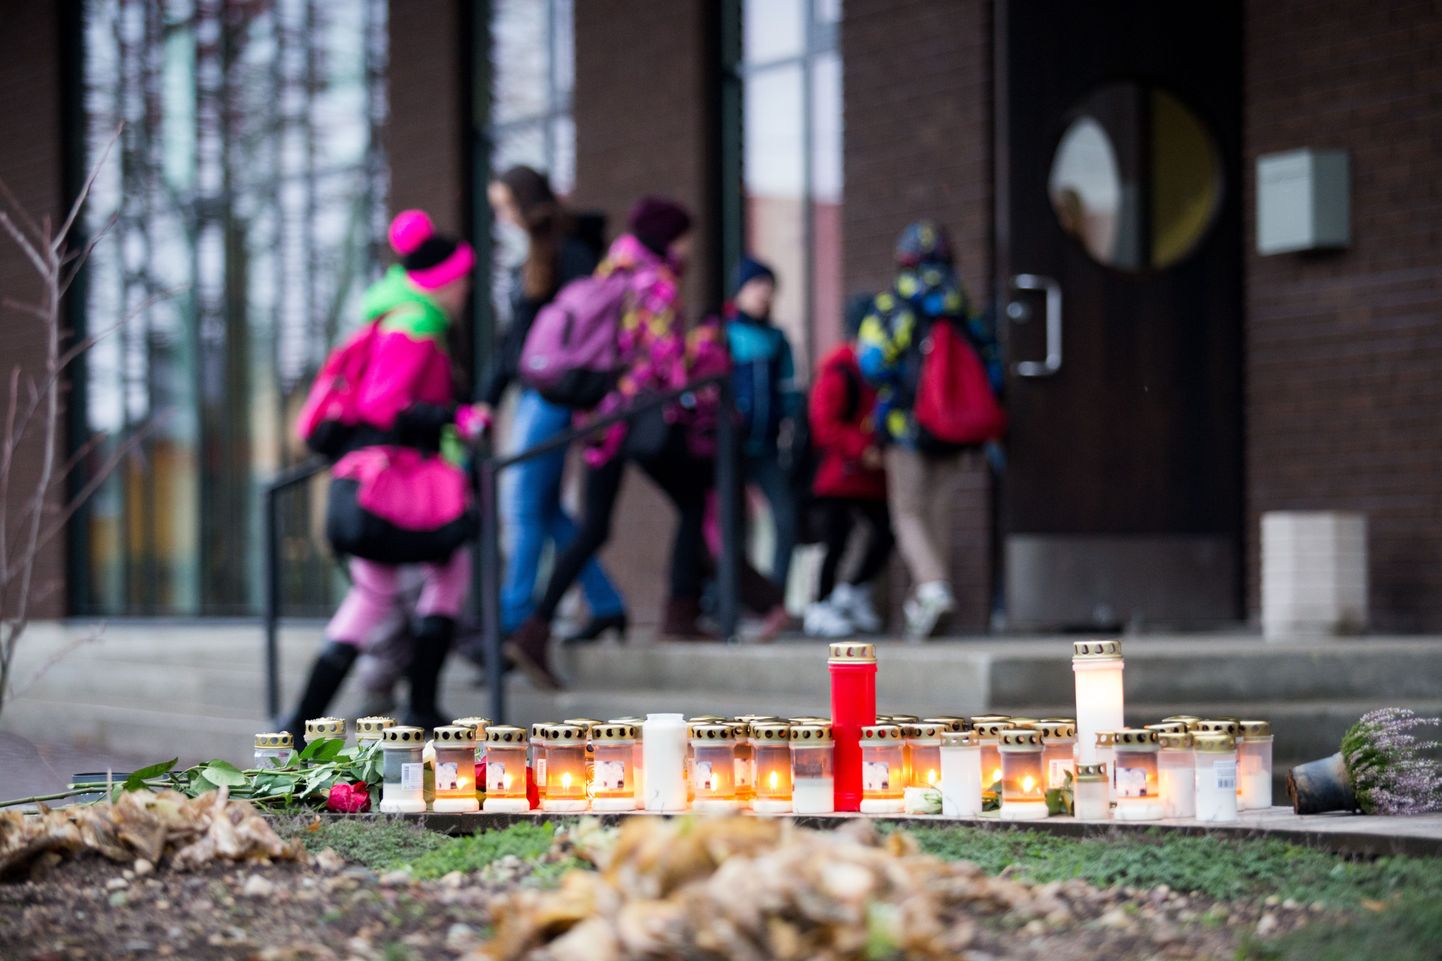 Около двух часов дня 27 октября 2014 года 15-летний подросток открыл стрельбу на уроке в вильяндиской школе Паалалинна, в результате которой погибла учительница немецкого языка Эне Сарап.